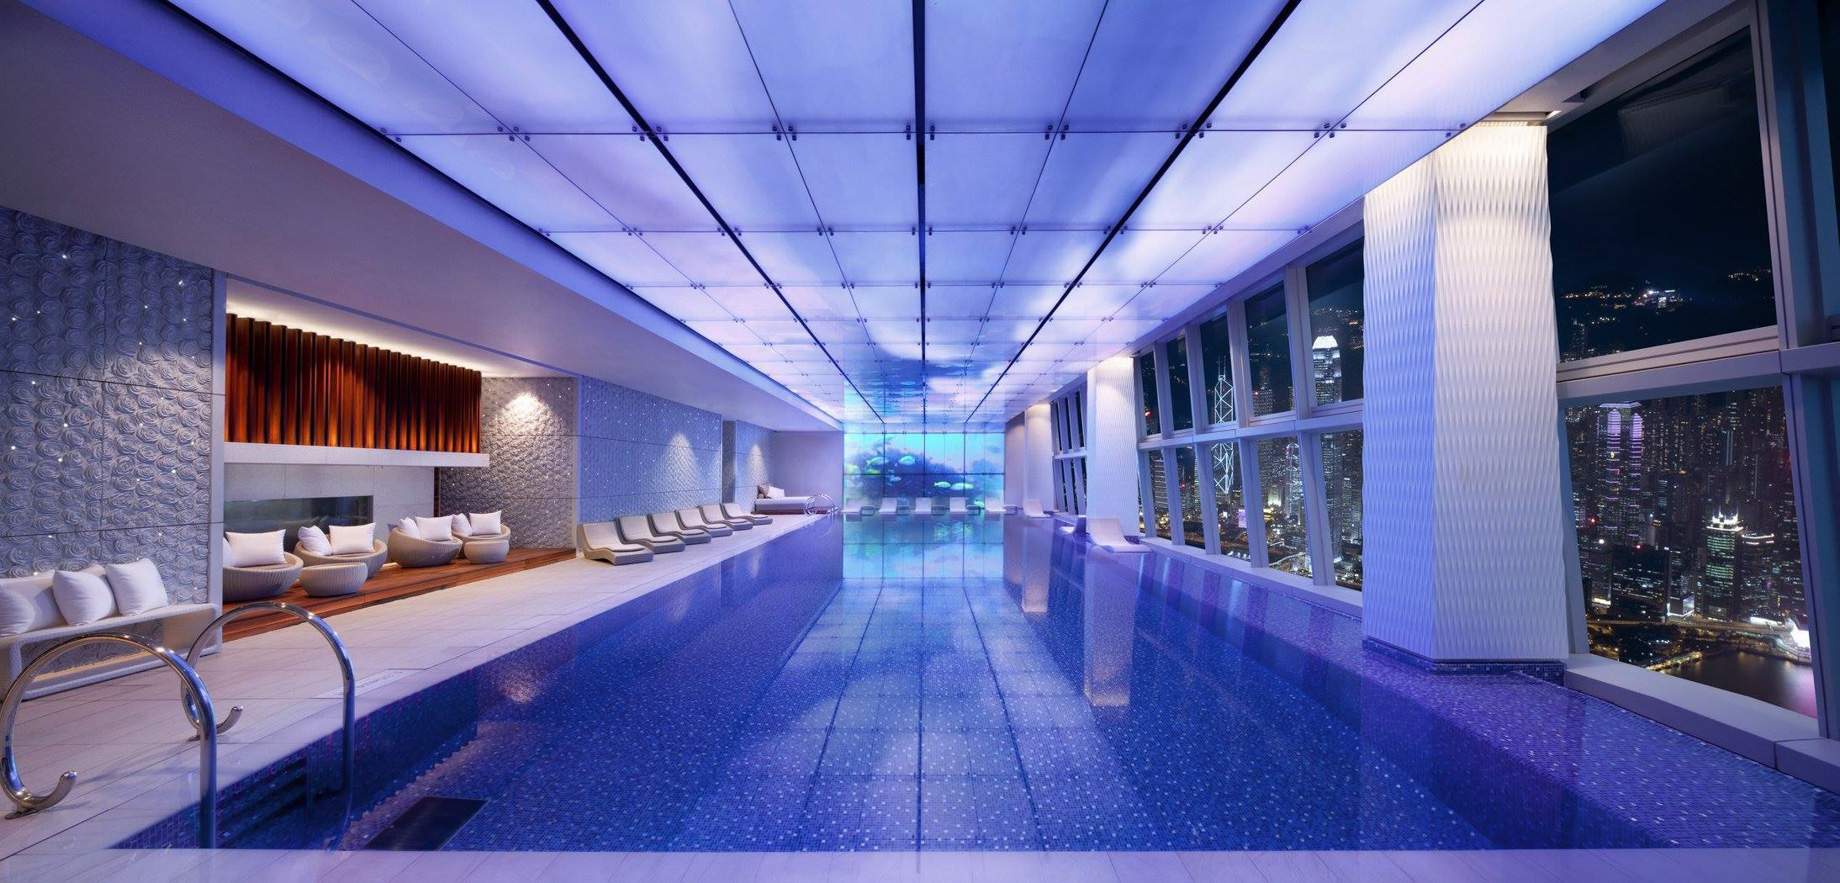 The Ritz-Carlton, Hong Kong Hotel - West Kowloon, Hong Kong - Indoor Pool Night